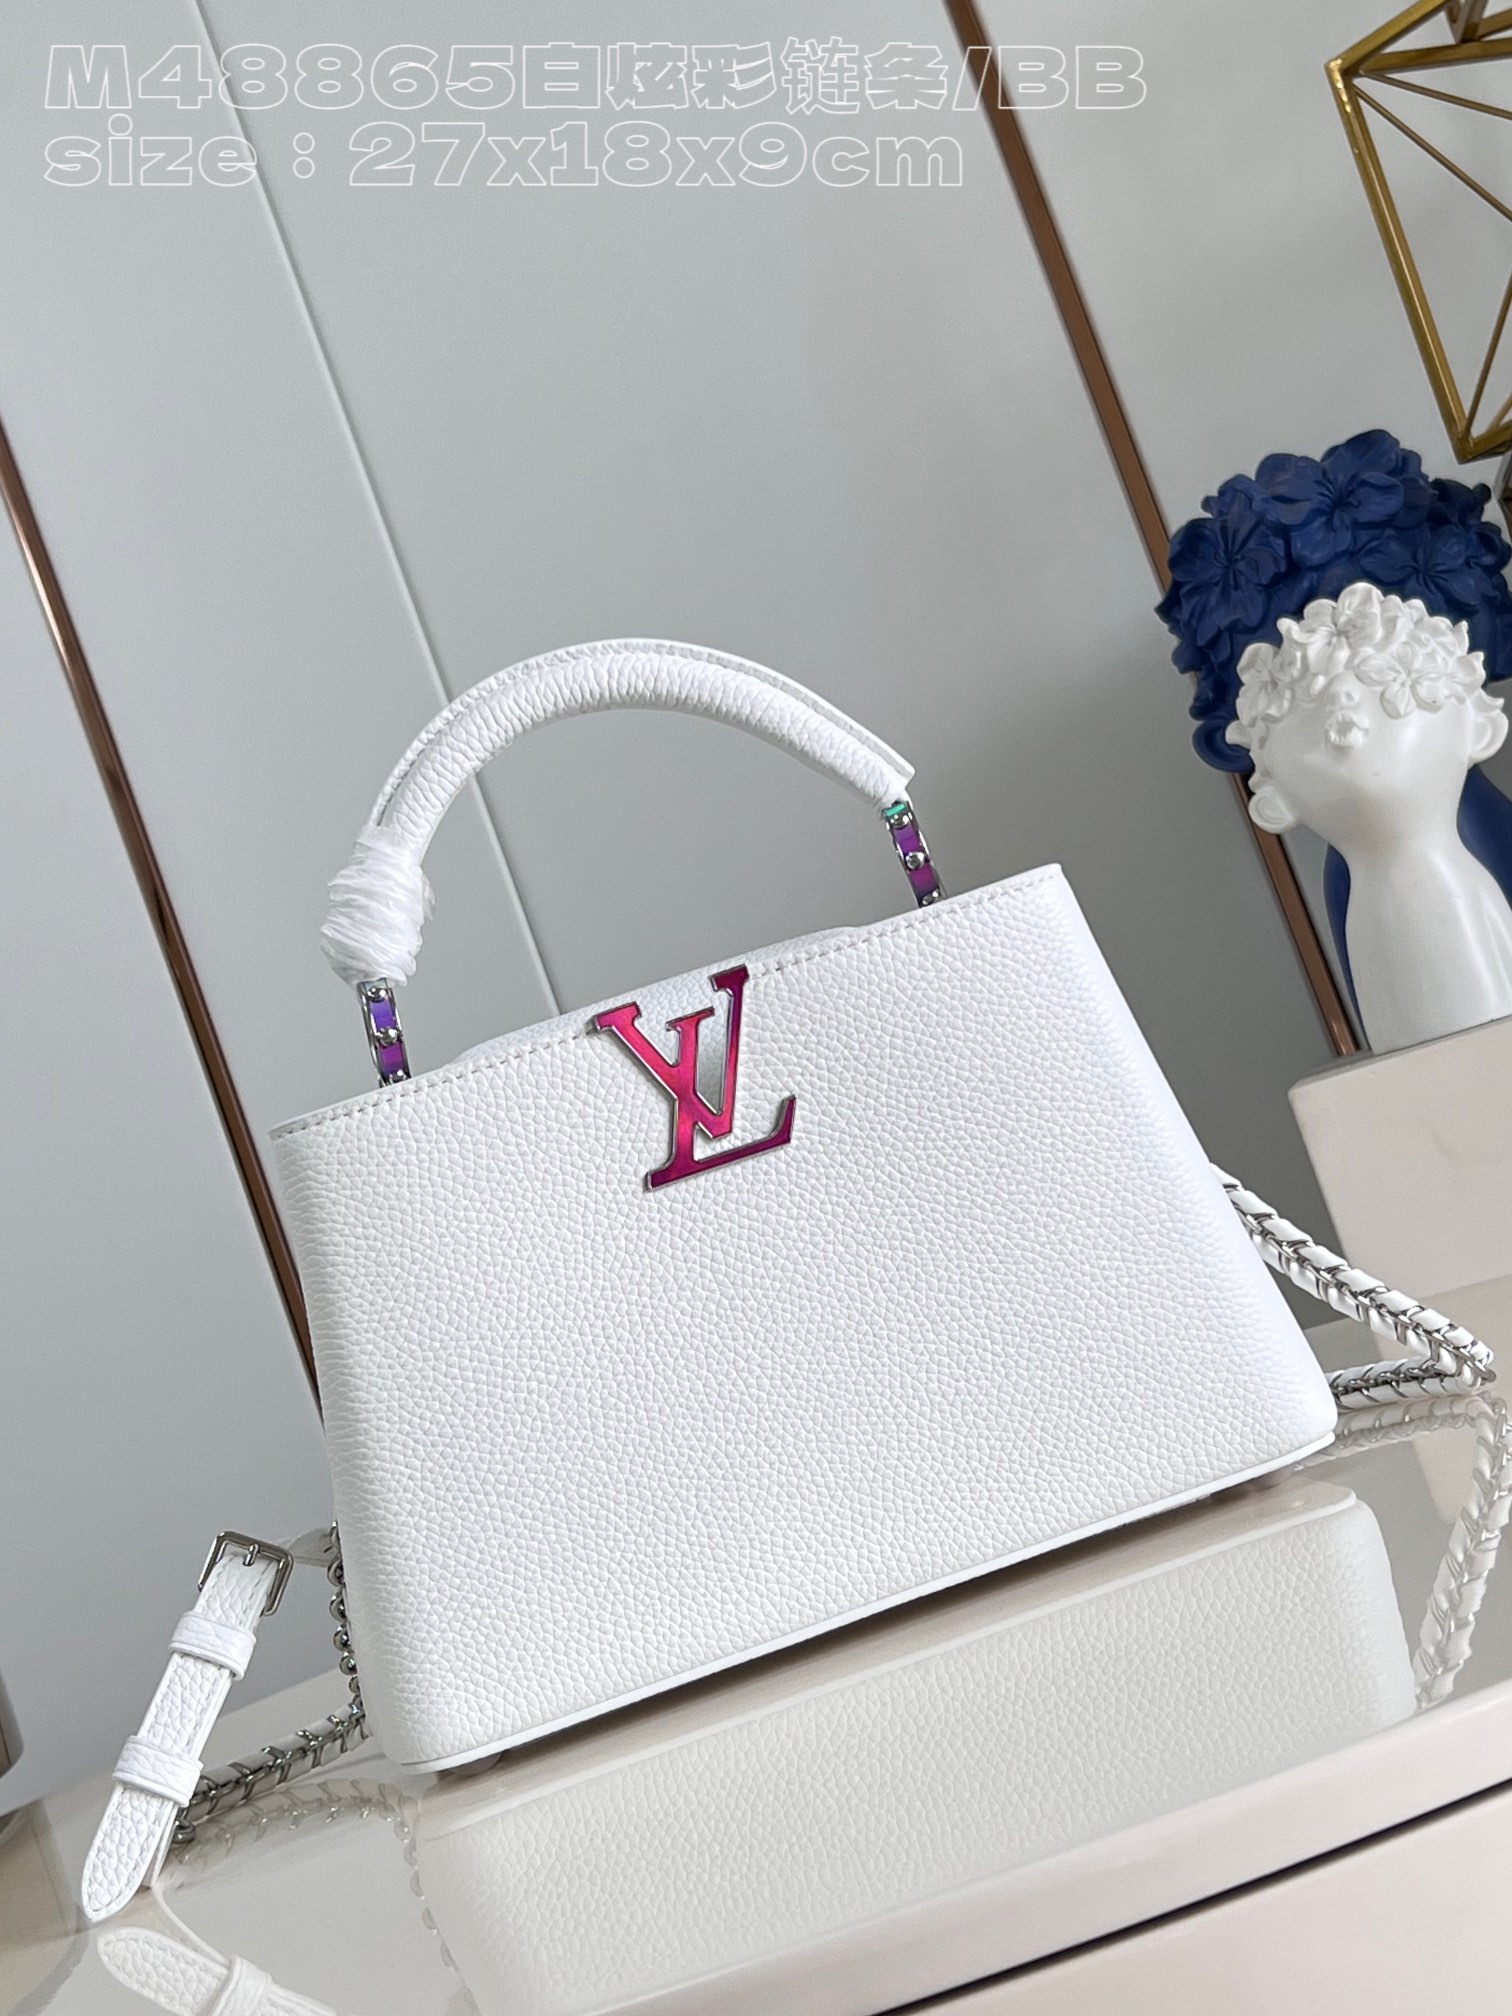 Louis Vuitton LV Capucines Bags Handbags White Calfskin Cowhide Chains M48865